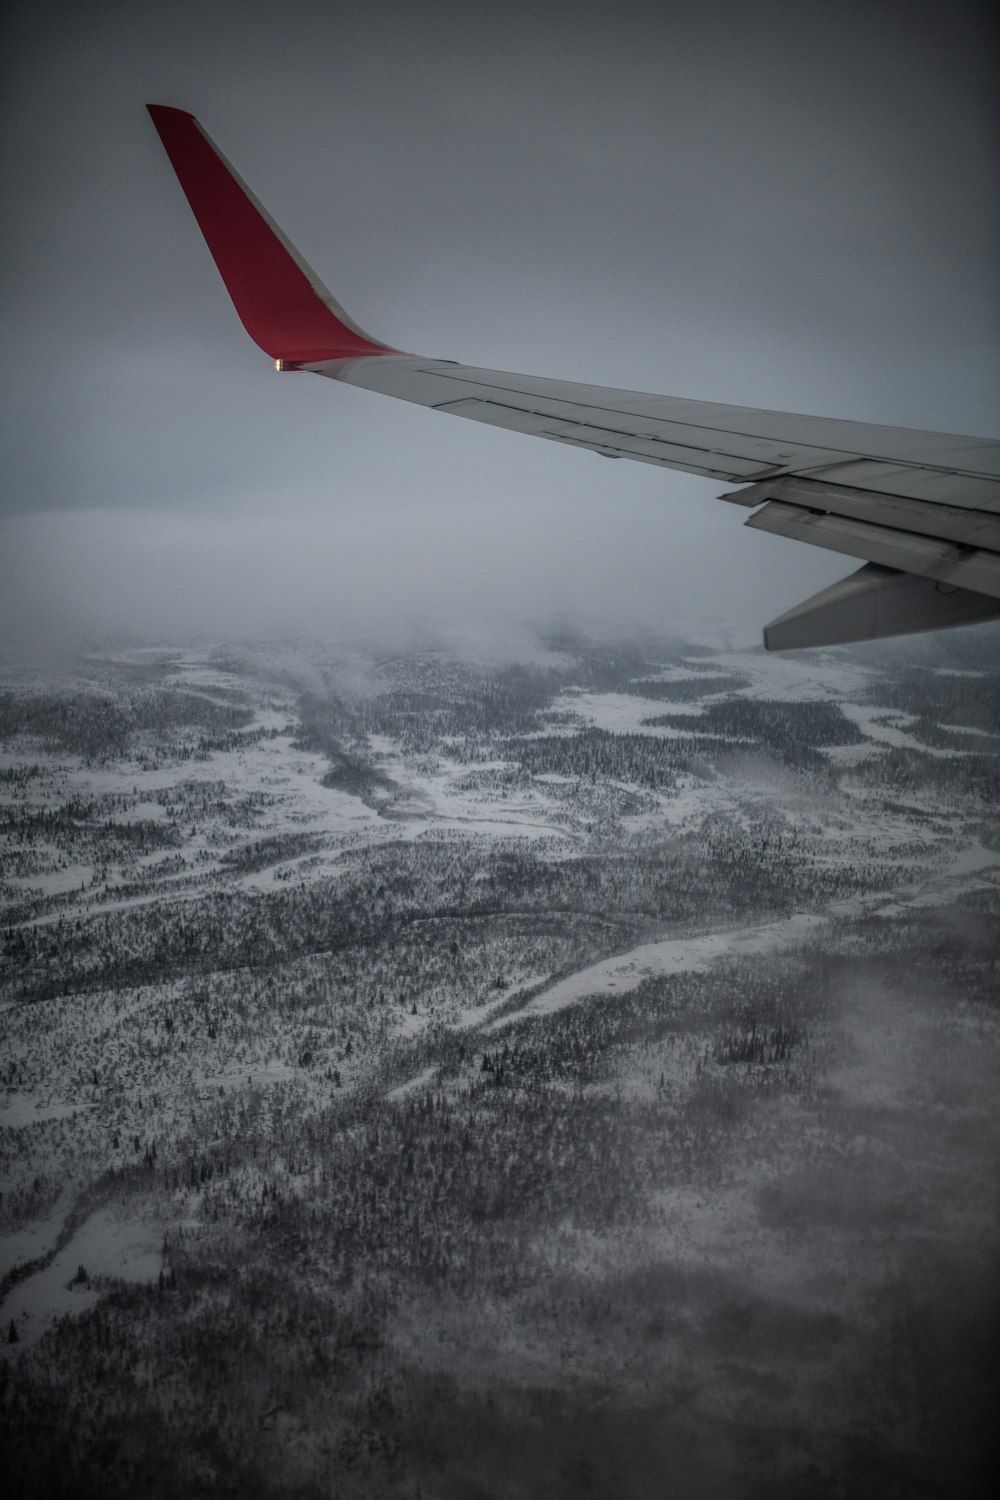 der Flügel eines Flugzeugs, das über eine verschneite Landschaft fliegt